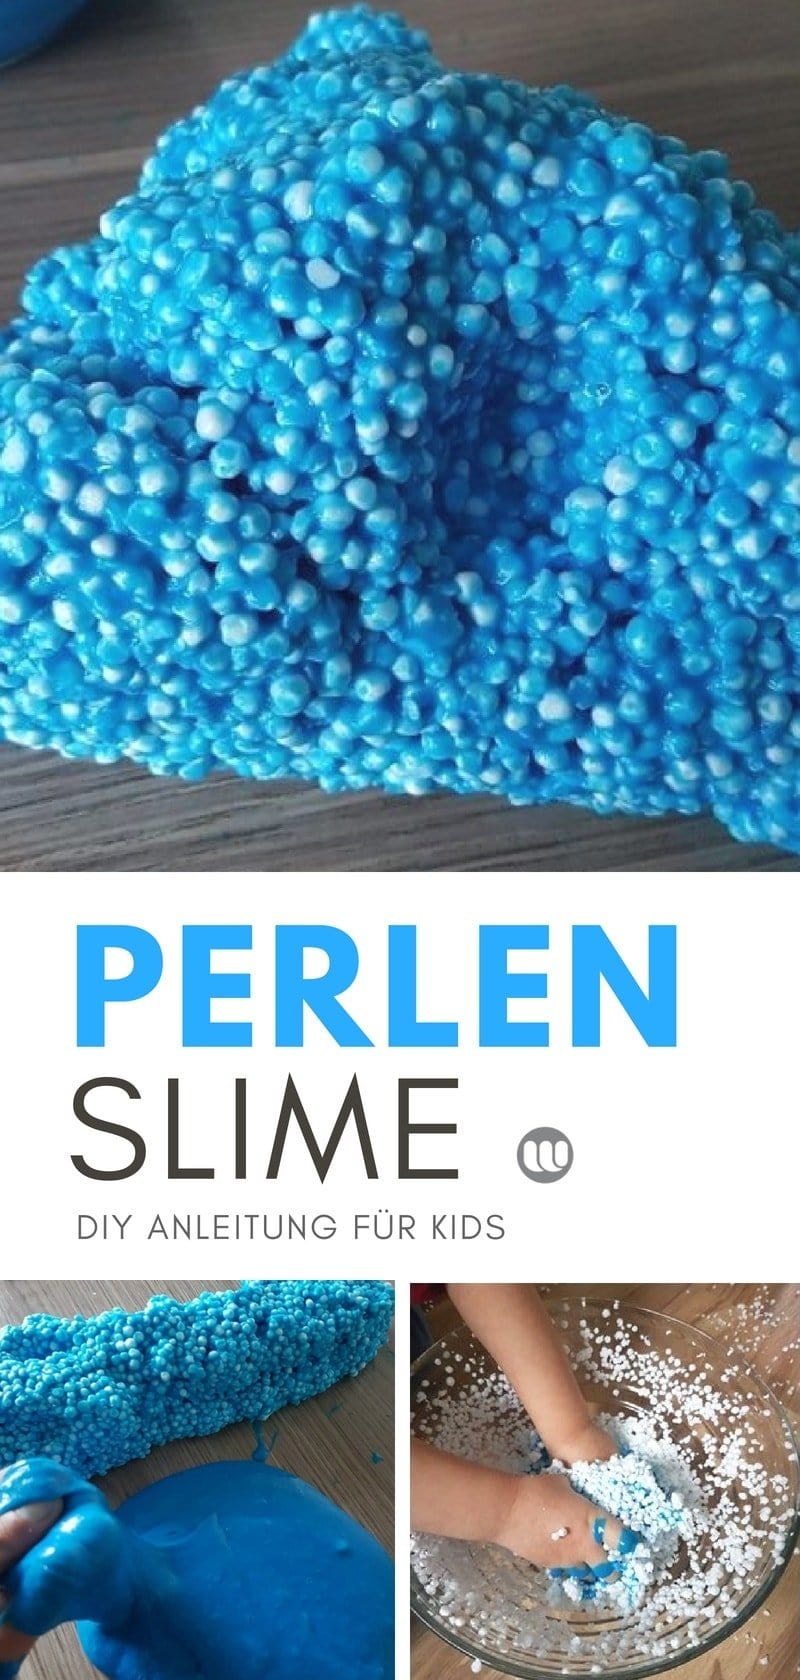 Rezept für Wolkenschleim: Perlen Slime Anleitung zum selber machen für Kinder